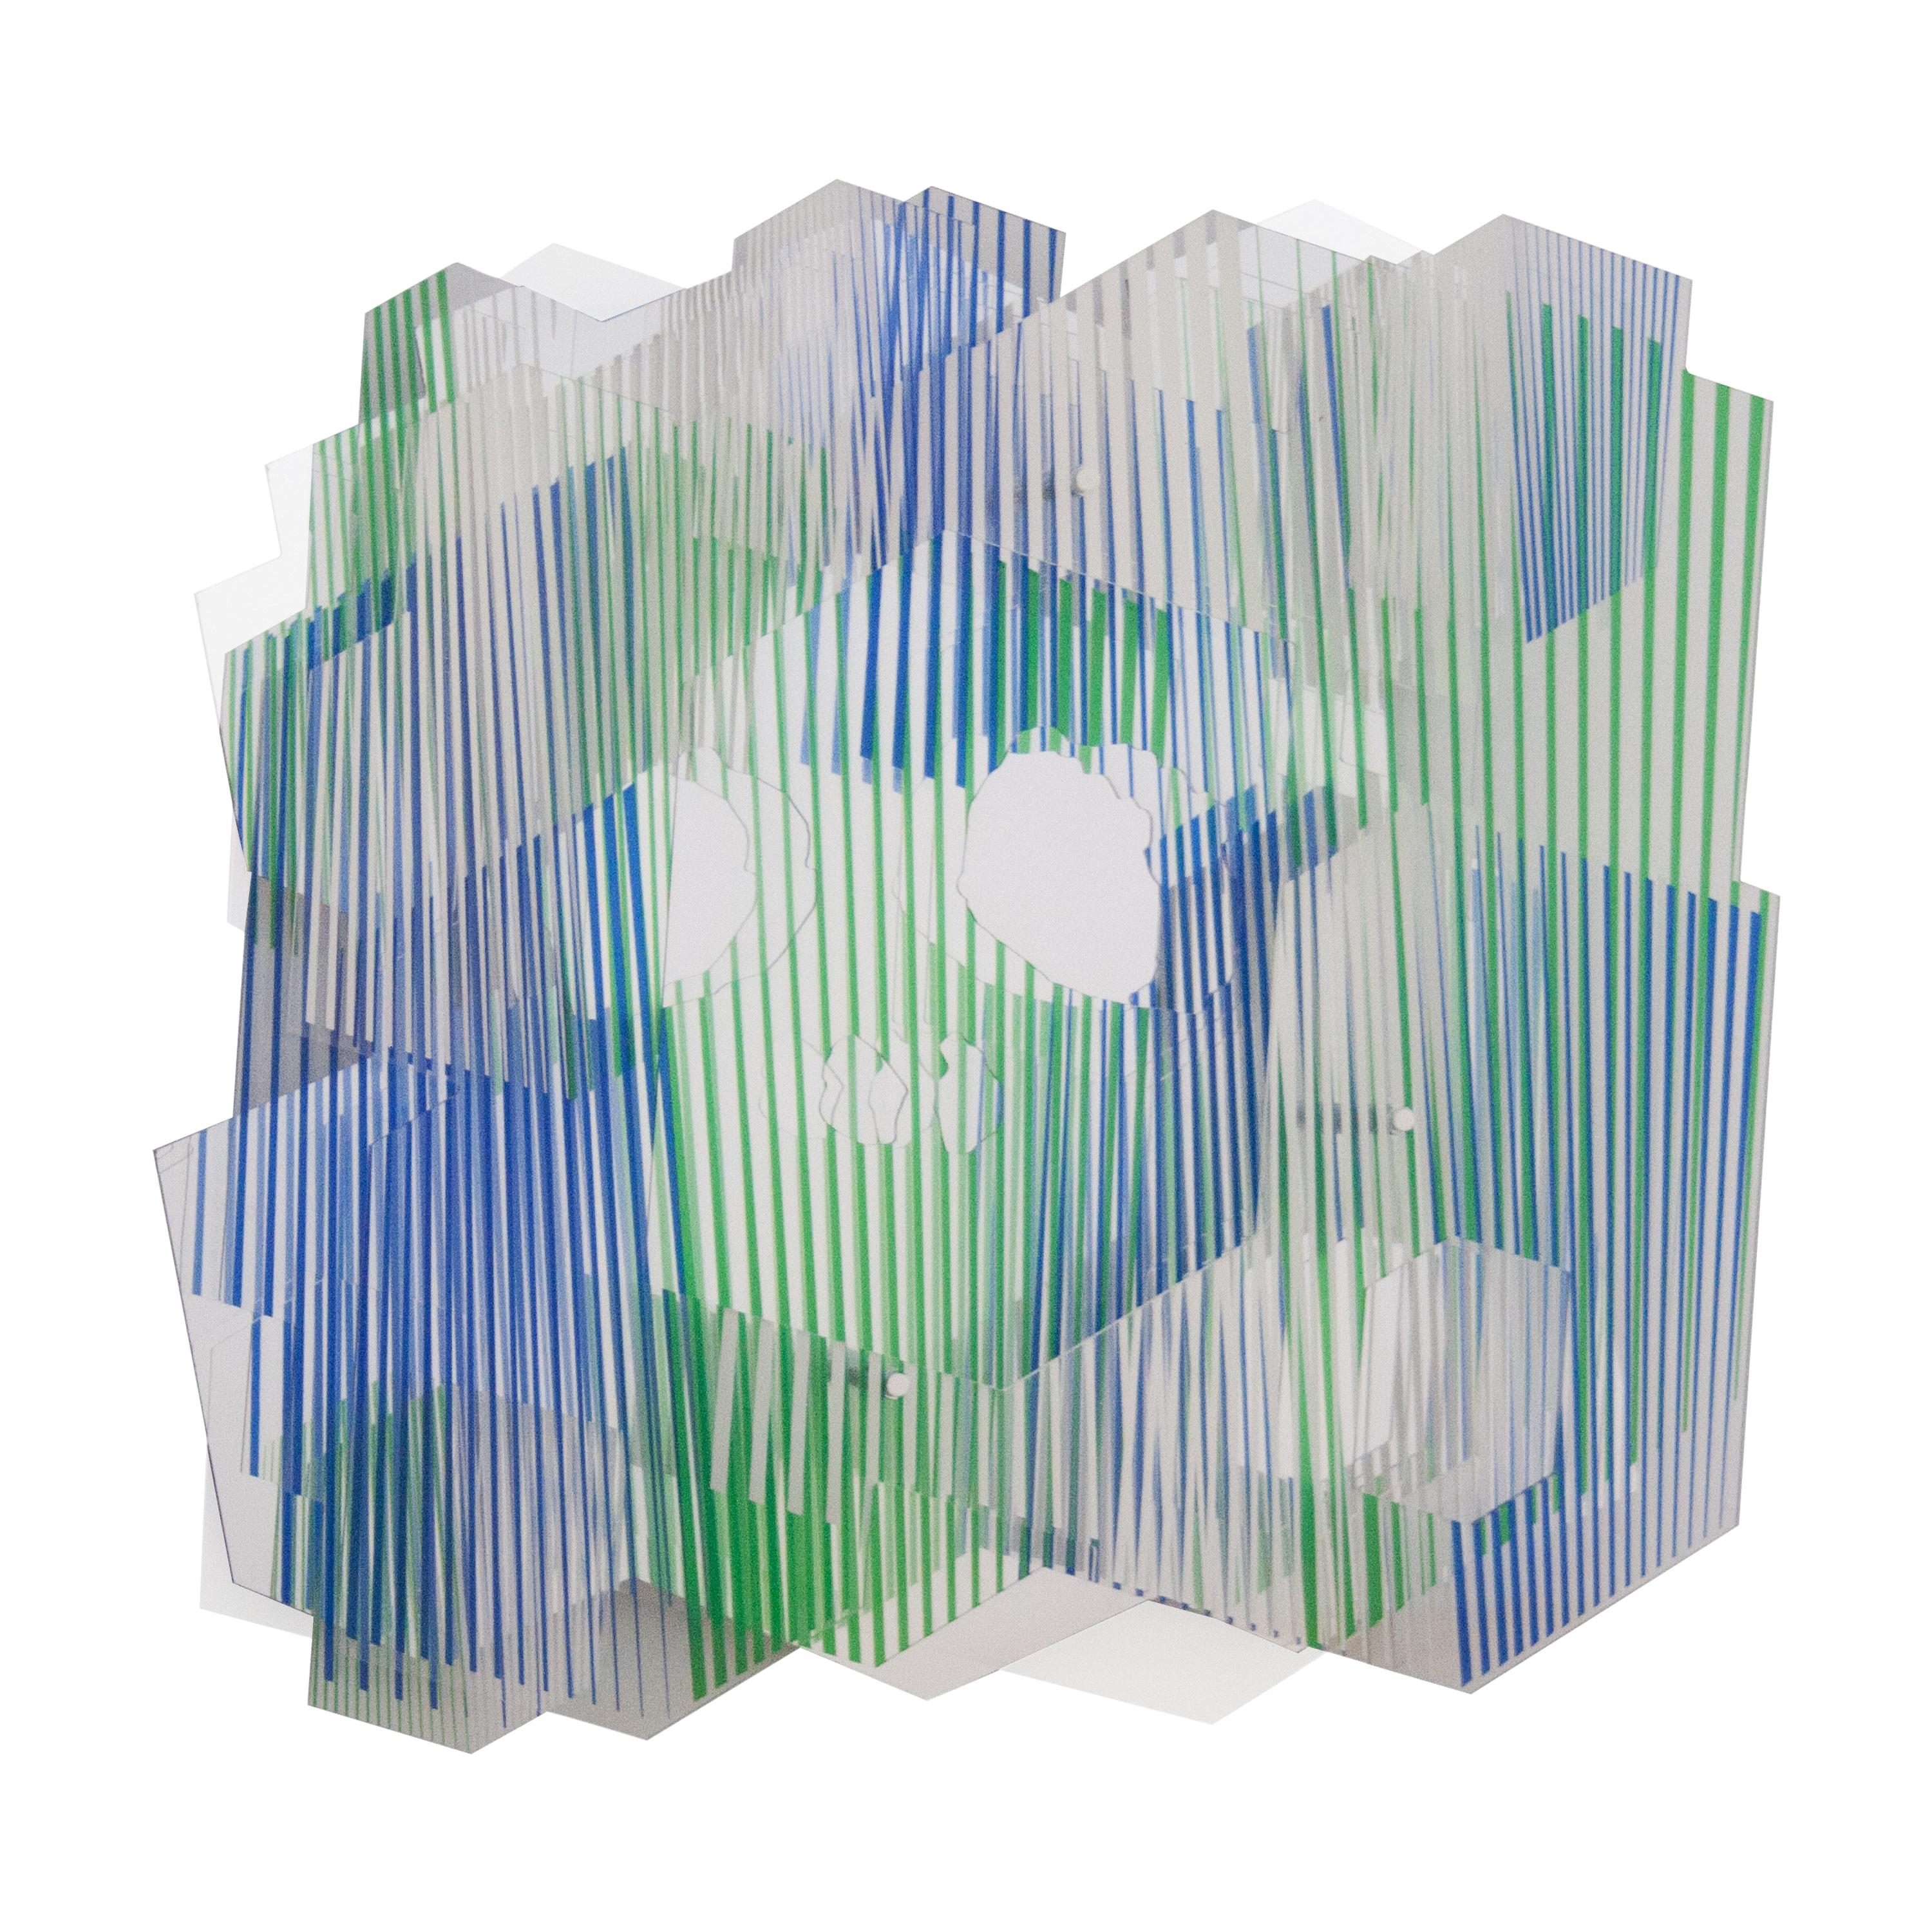 Juan Gerstl "Paz" Printed Plexiglass Wall-Mounted Sculpture, Spain, 2020